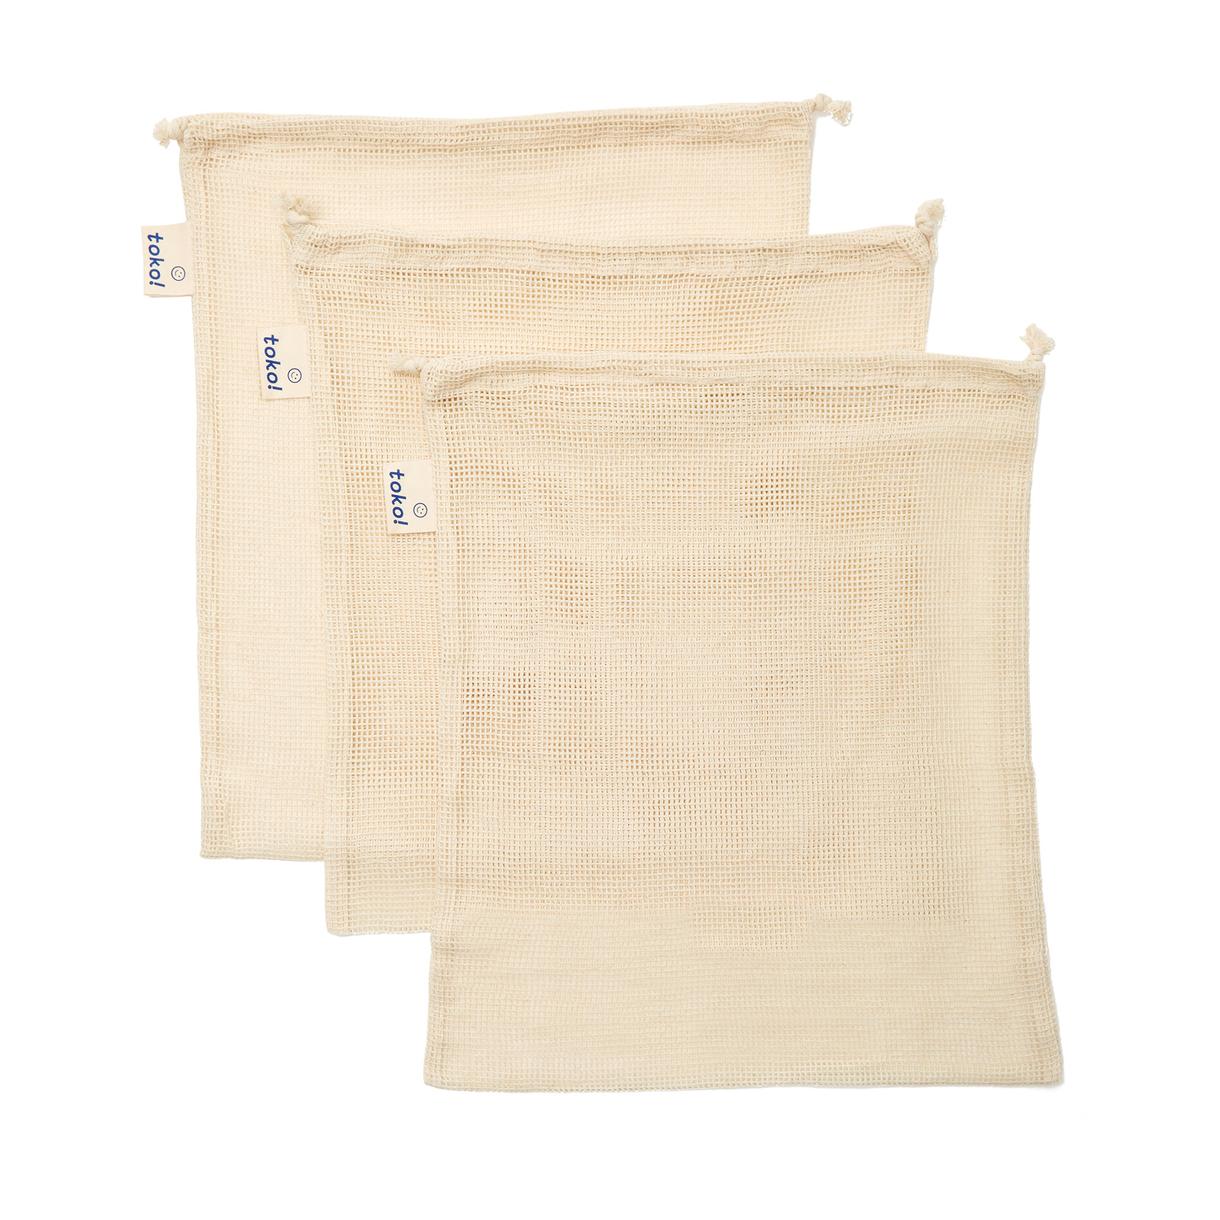 toko! Organic Cotton Drawstring Produce Bags, Set of 3 | goop